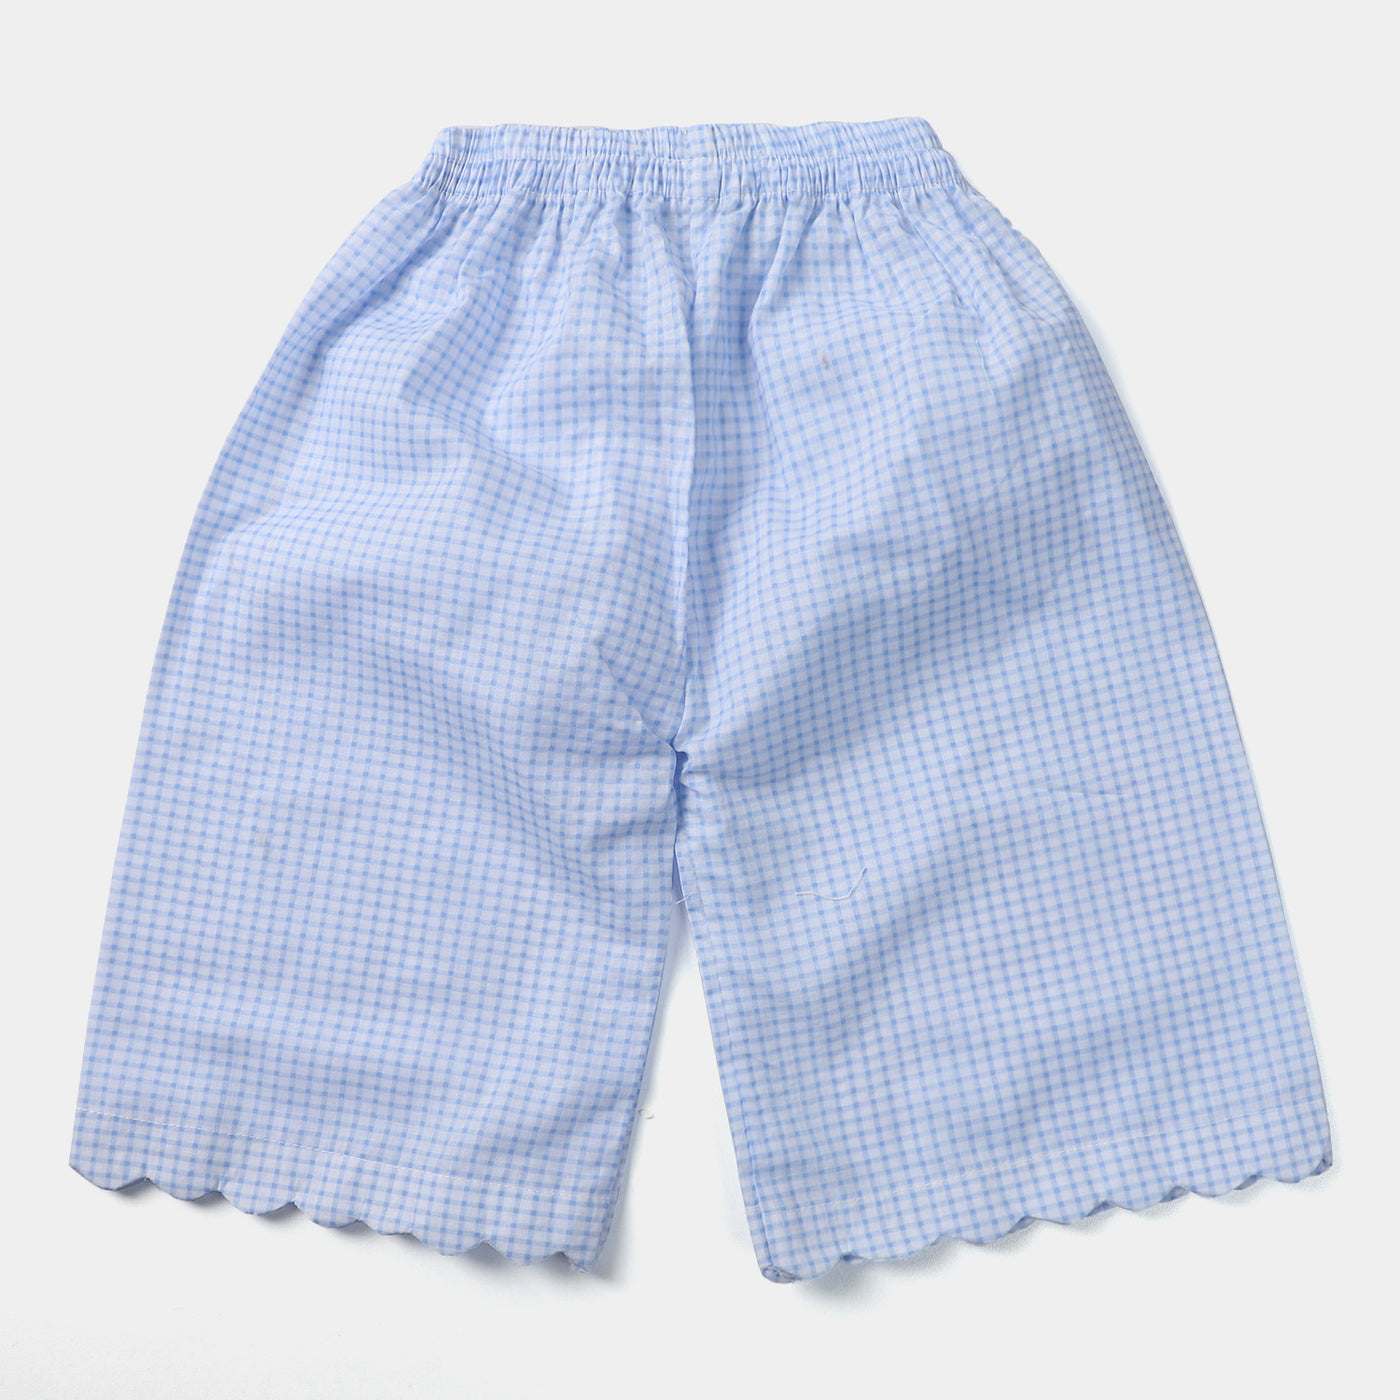 Infant Girls Cotton 2PCs Suit Color Blast-Blue